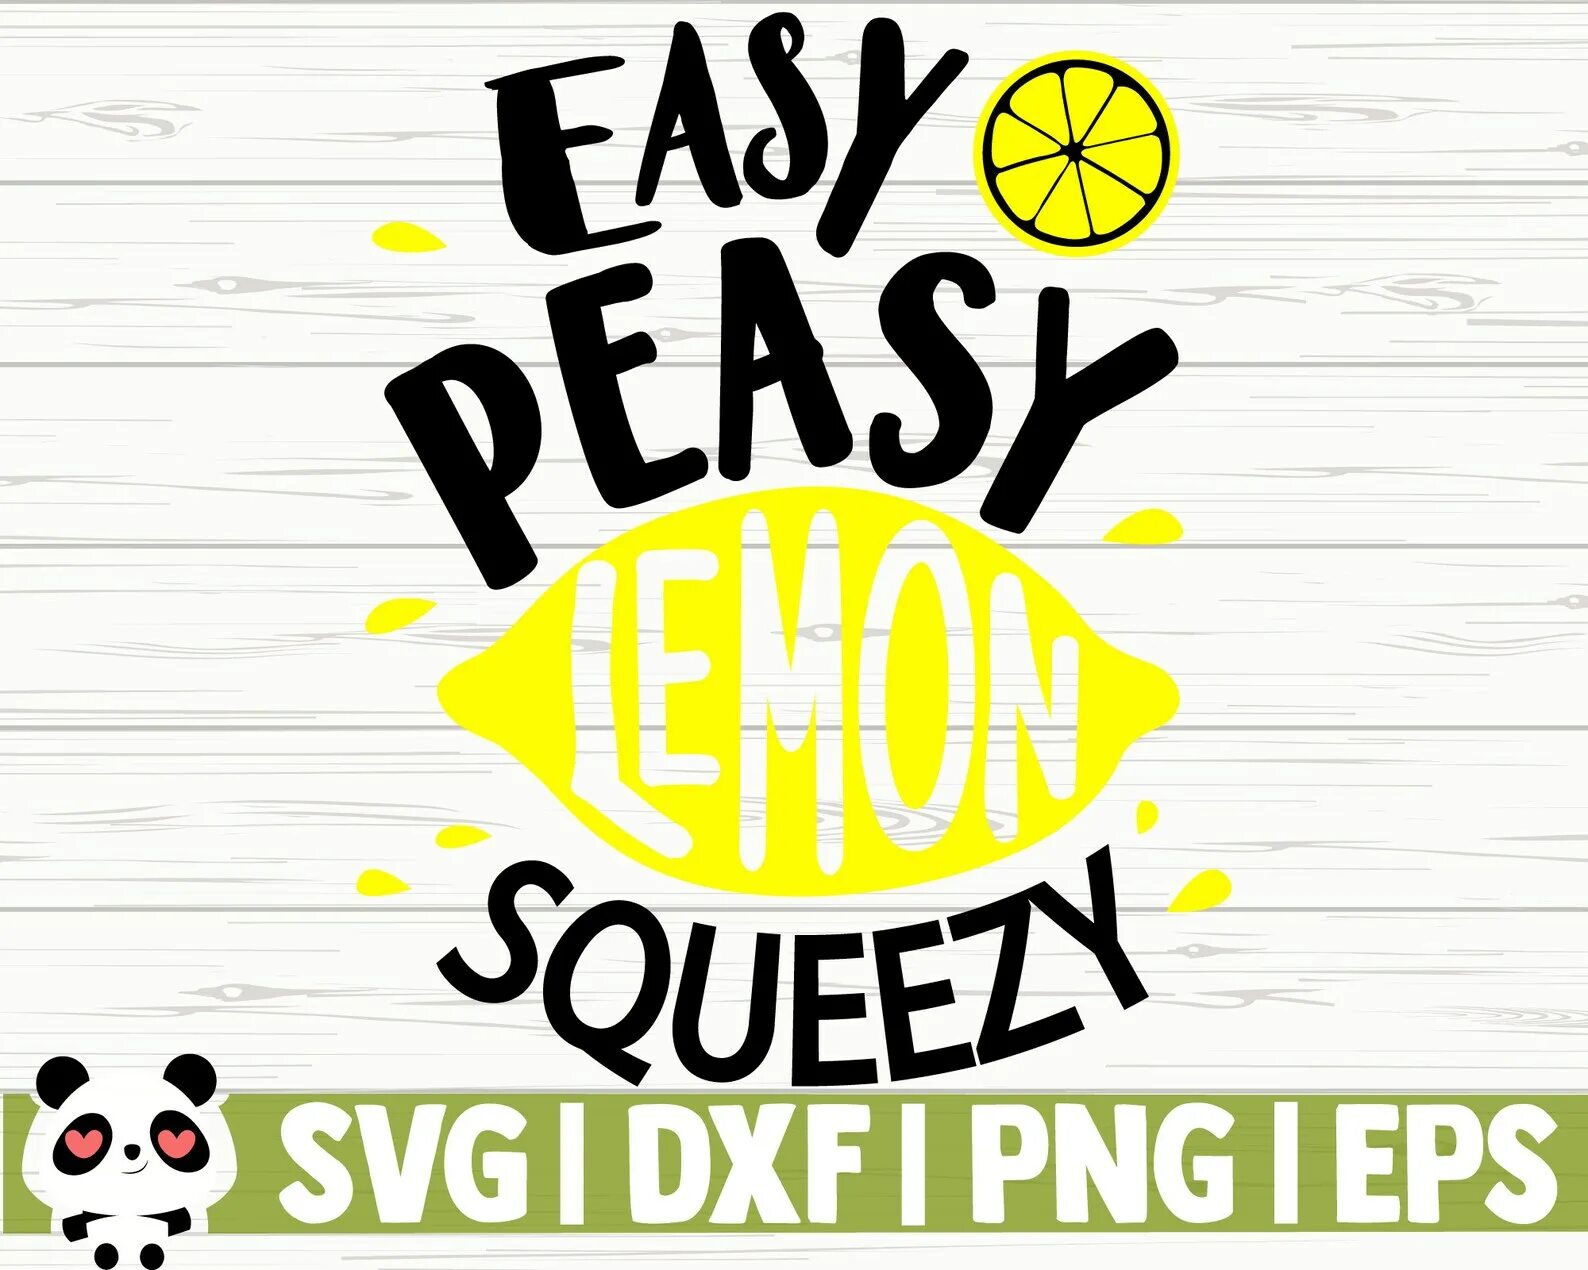 Easy peasy lemon. Easy Peasy Lemon Squeezy. Easy Peasy Lemon Squeezy картинка. Торговая марка easy Peasy. Lemon Squeezy группа.